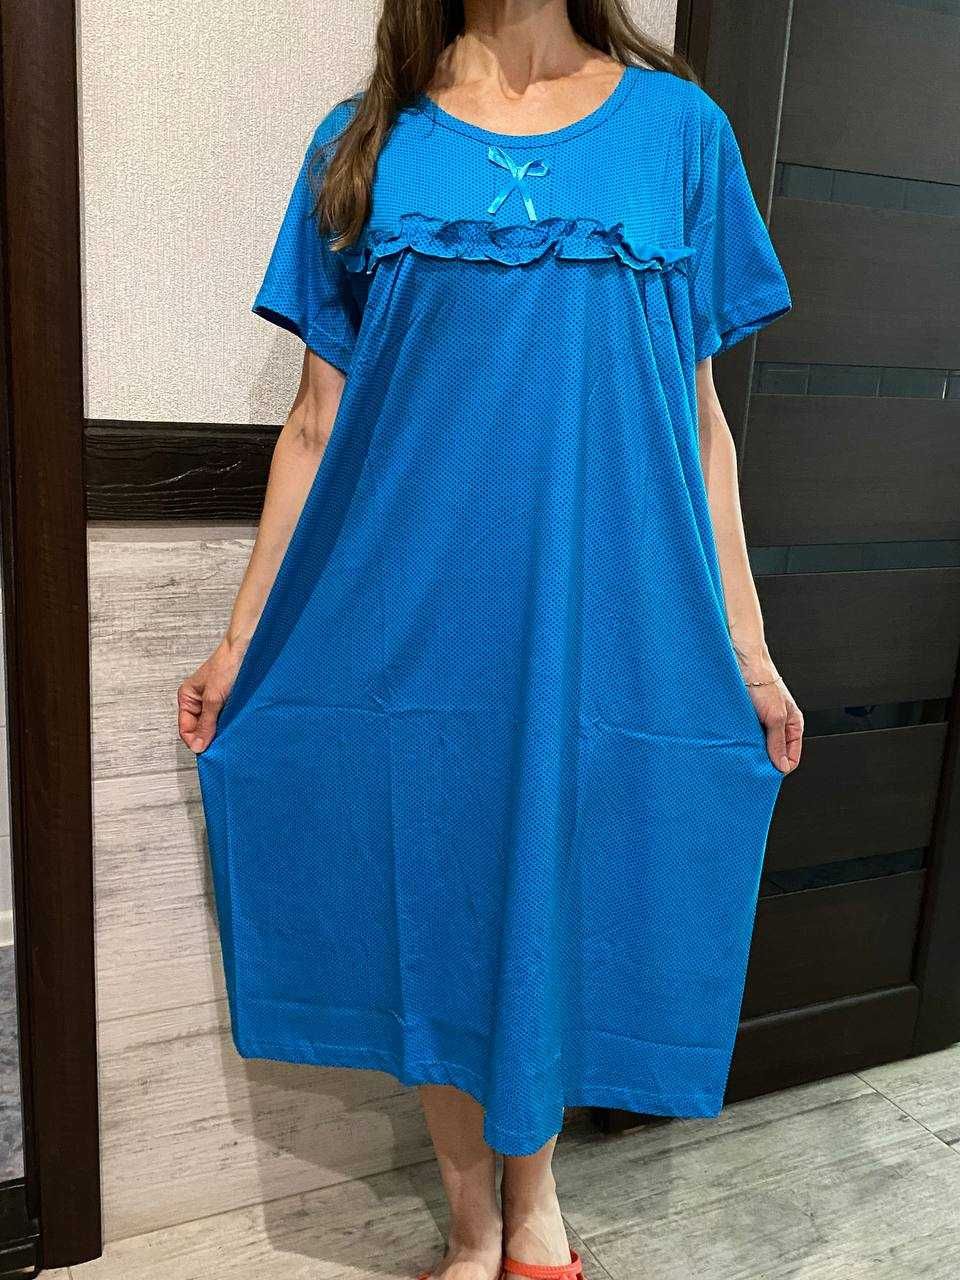 Нічна сорочка, ночнушка Homewear, Узбекистан, якість, 48-52